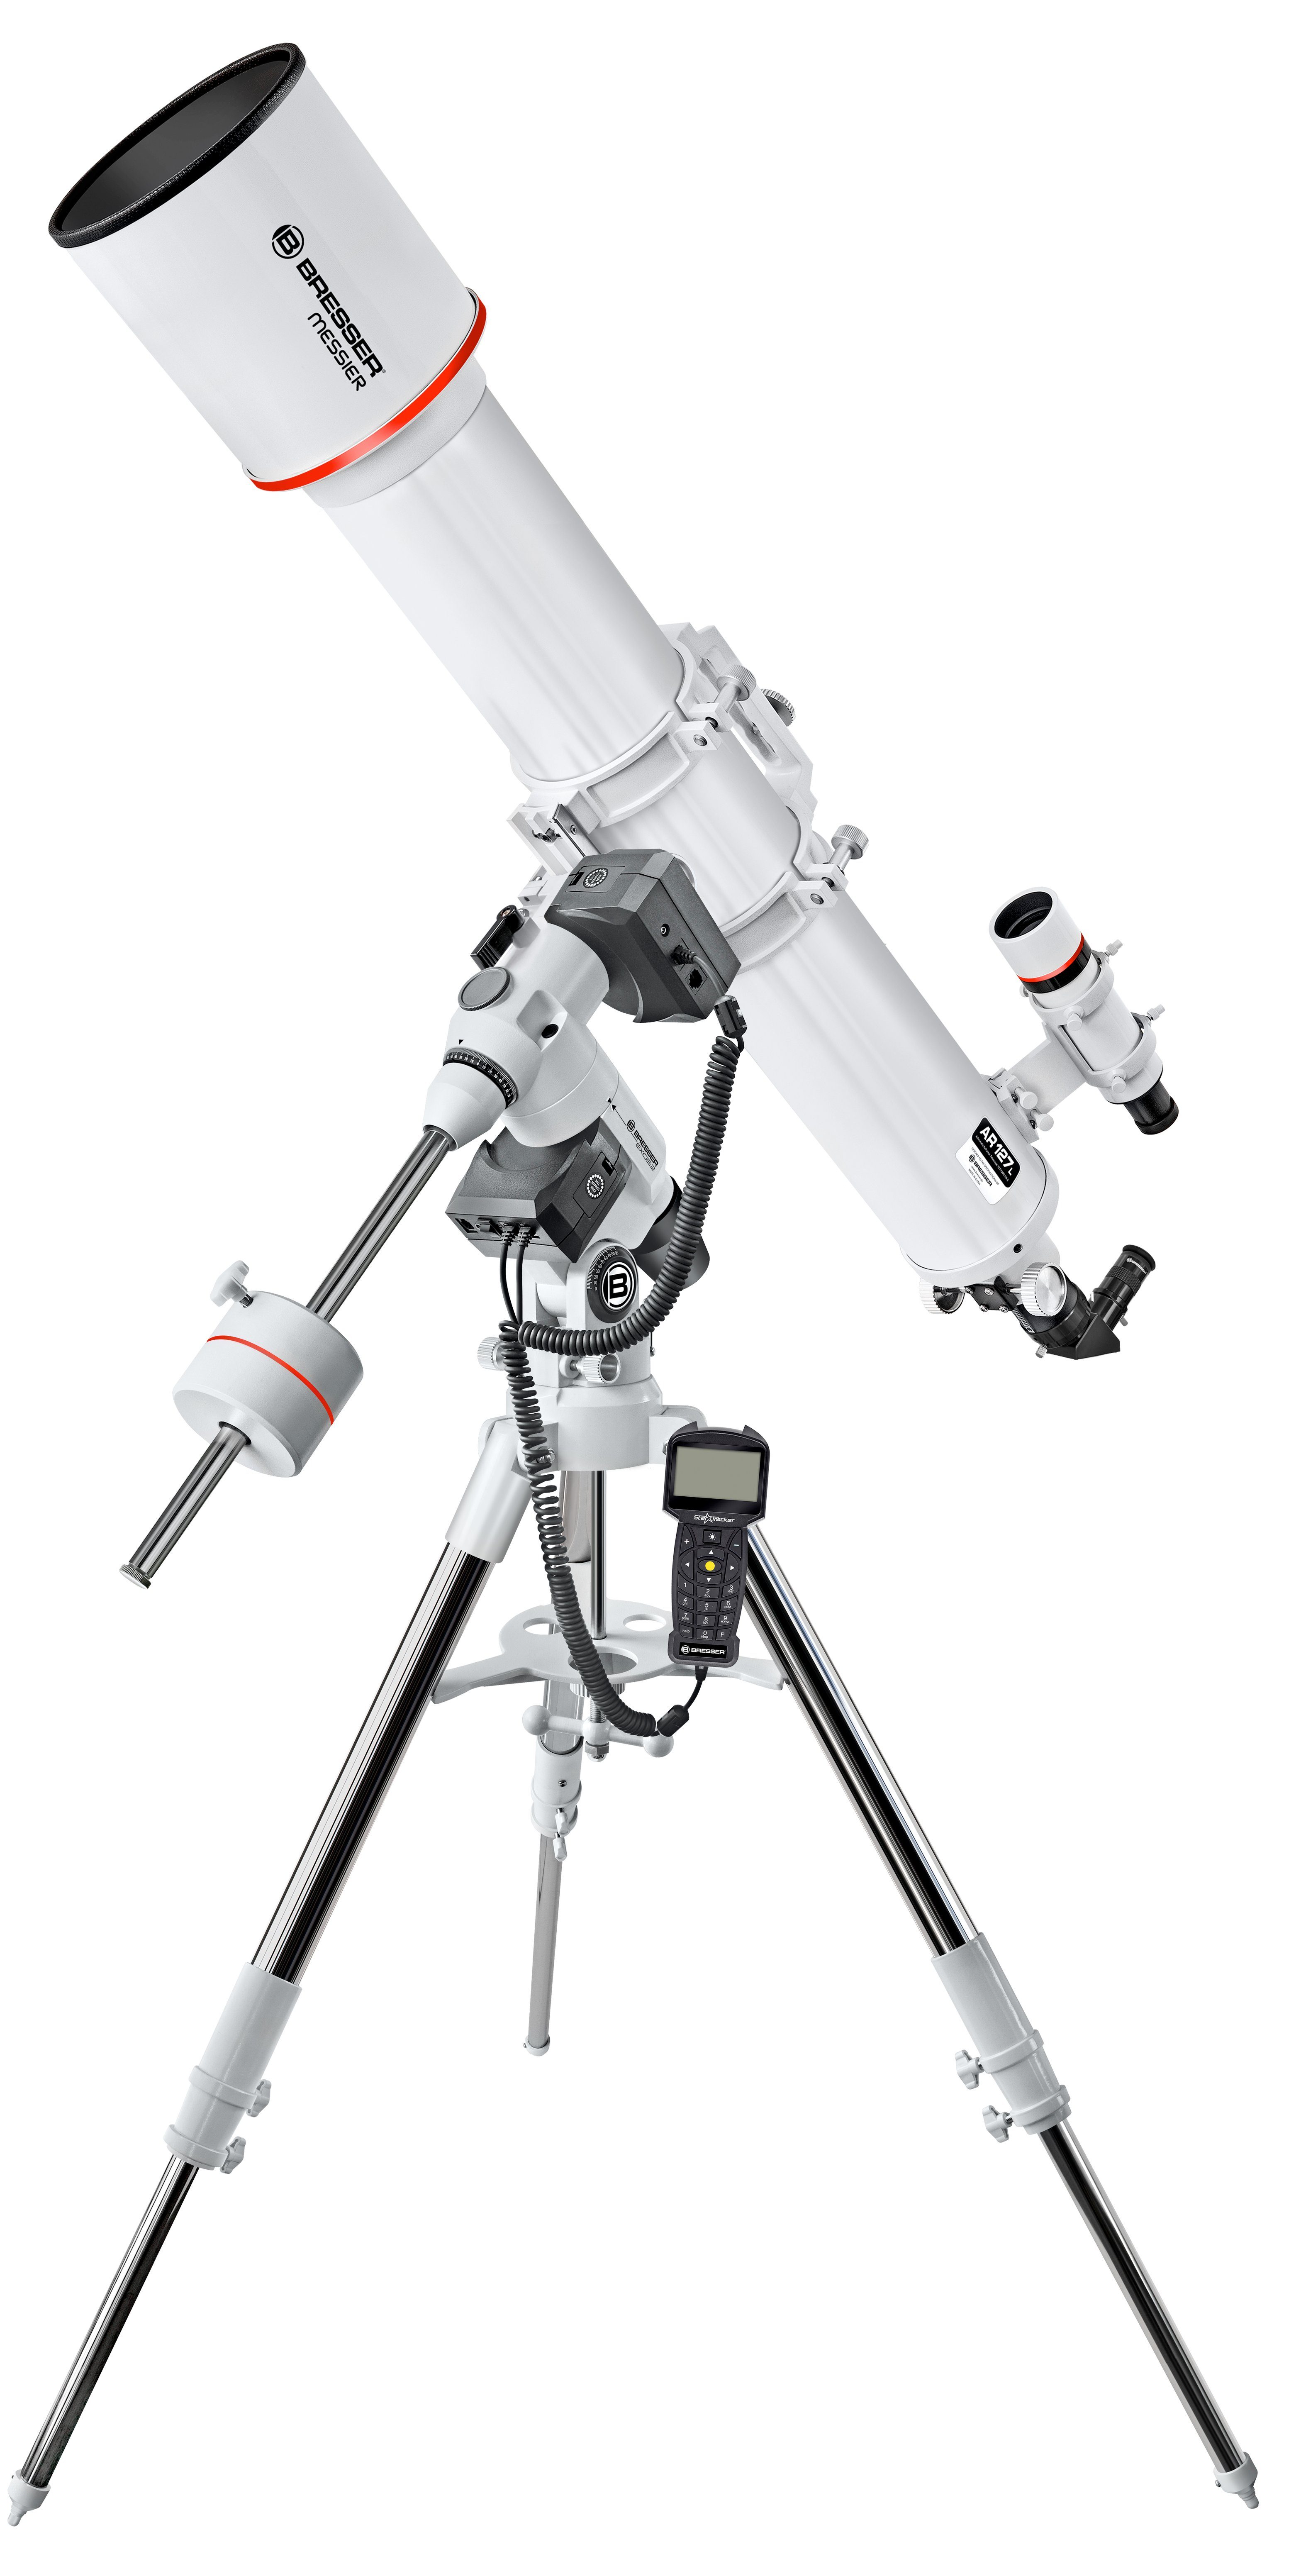 BRESSER Teleskop Messier Refraktor AR-127L/1200 EXOS-2 GoTo Hexafoc